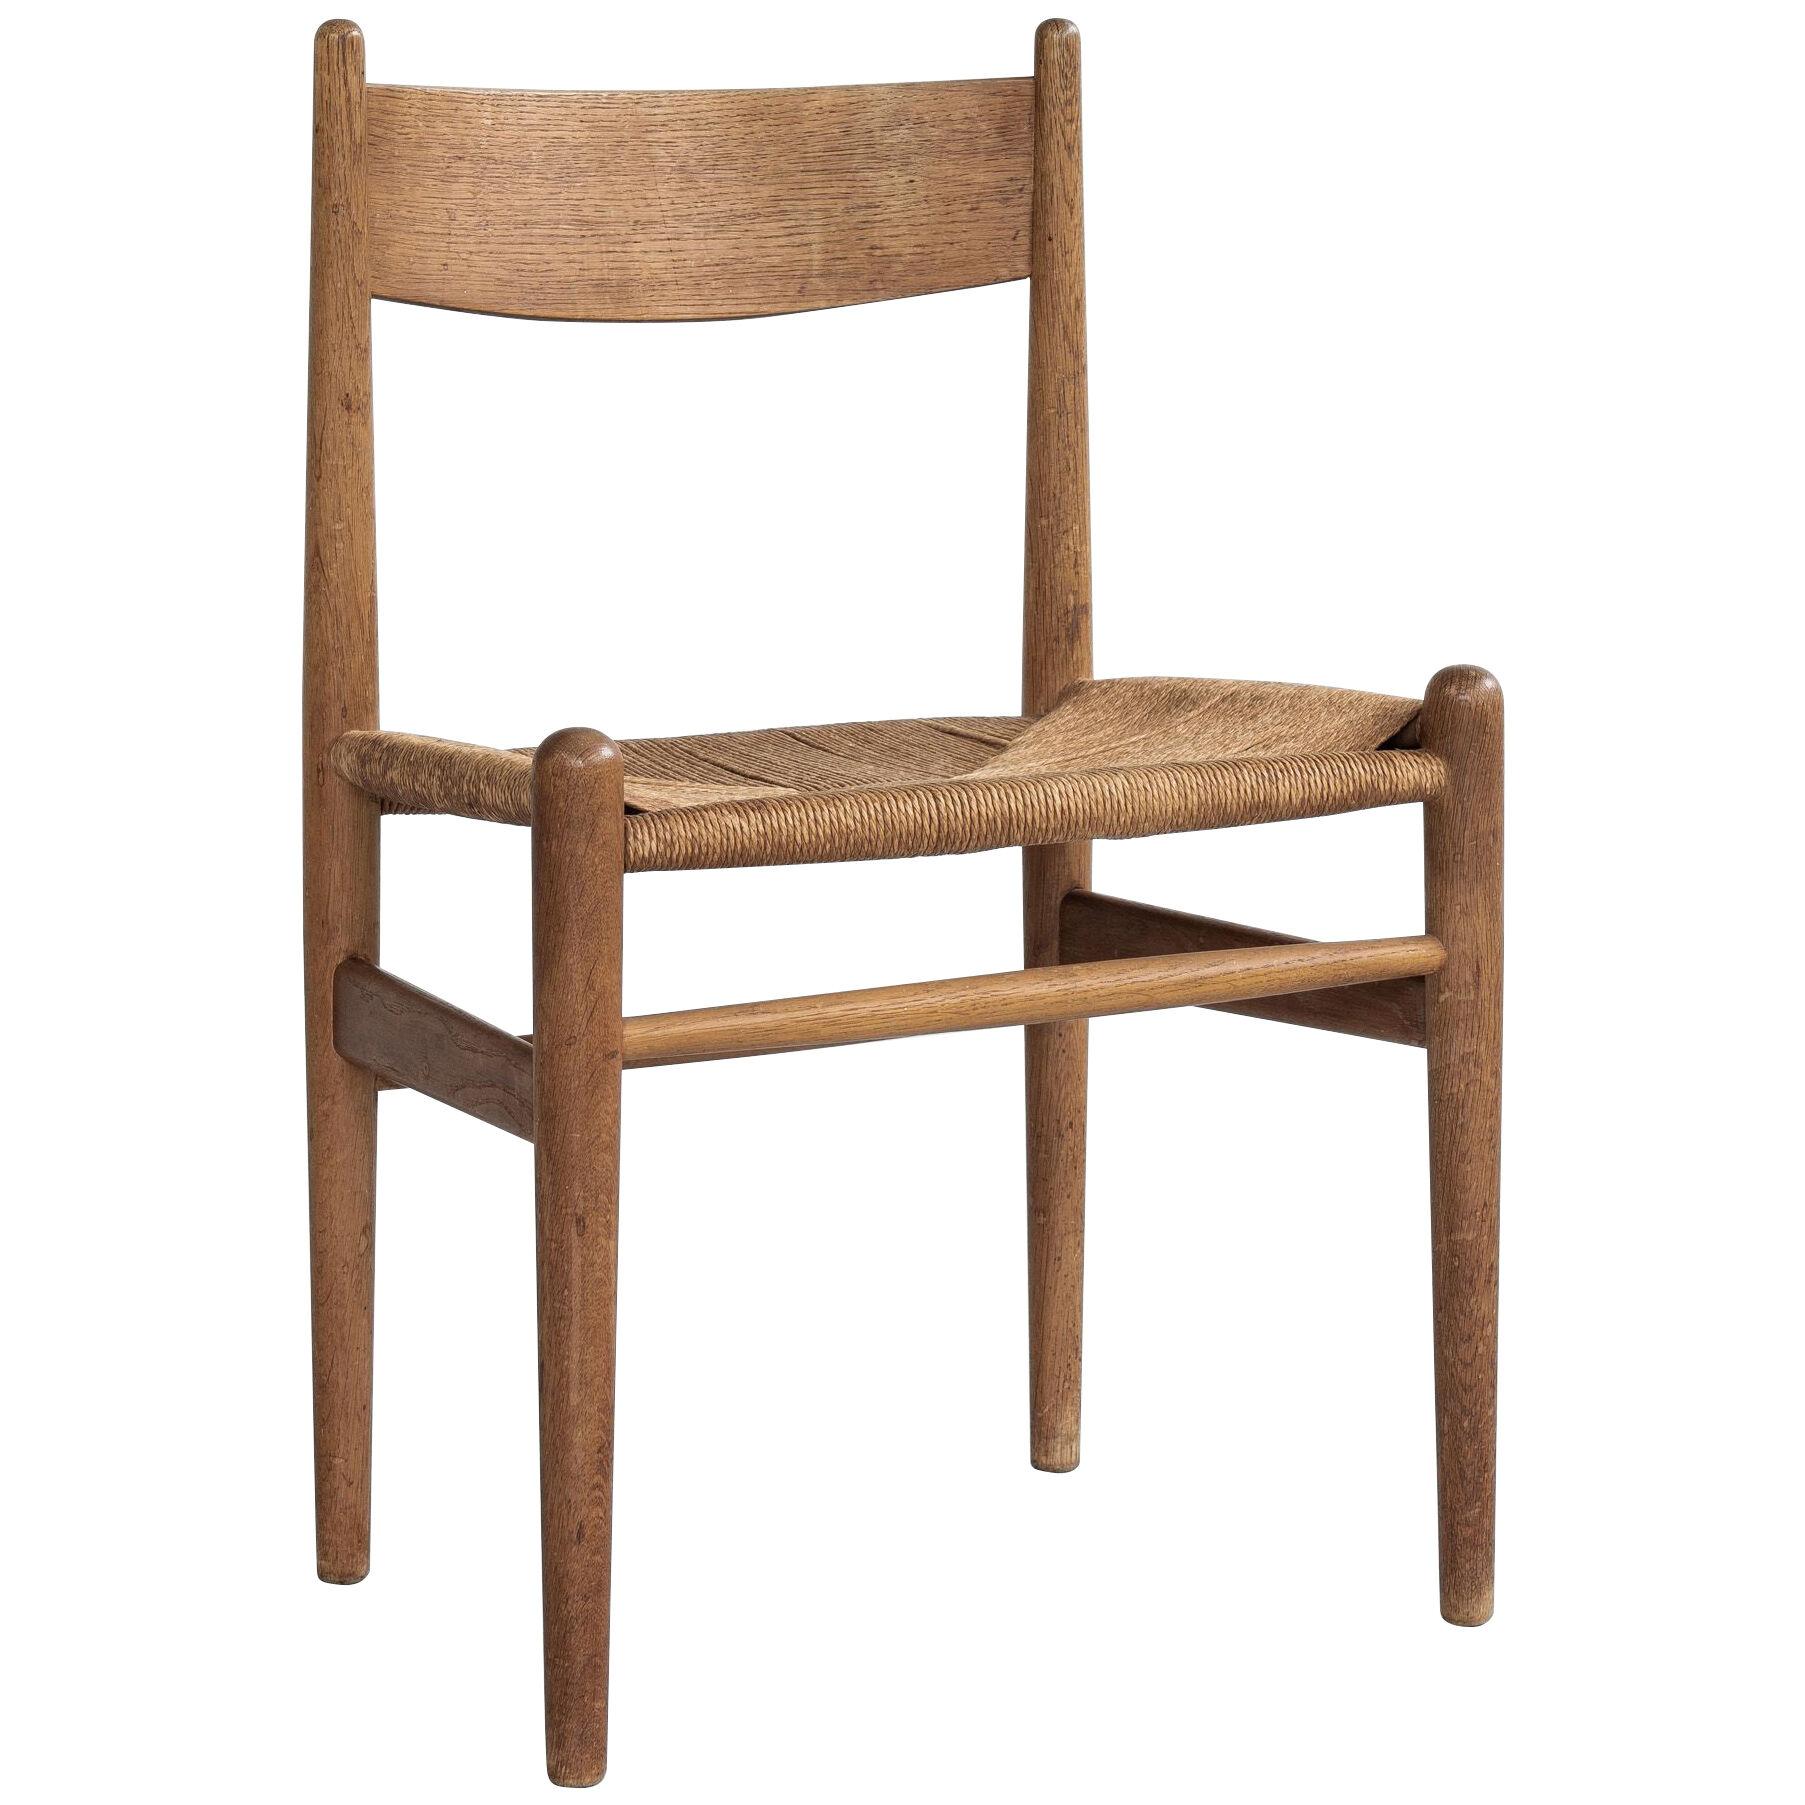 Midcentury Danish CH36 chair in oak by Hans Wegner for Carl & Søn